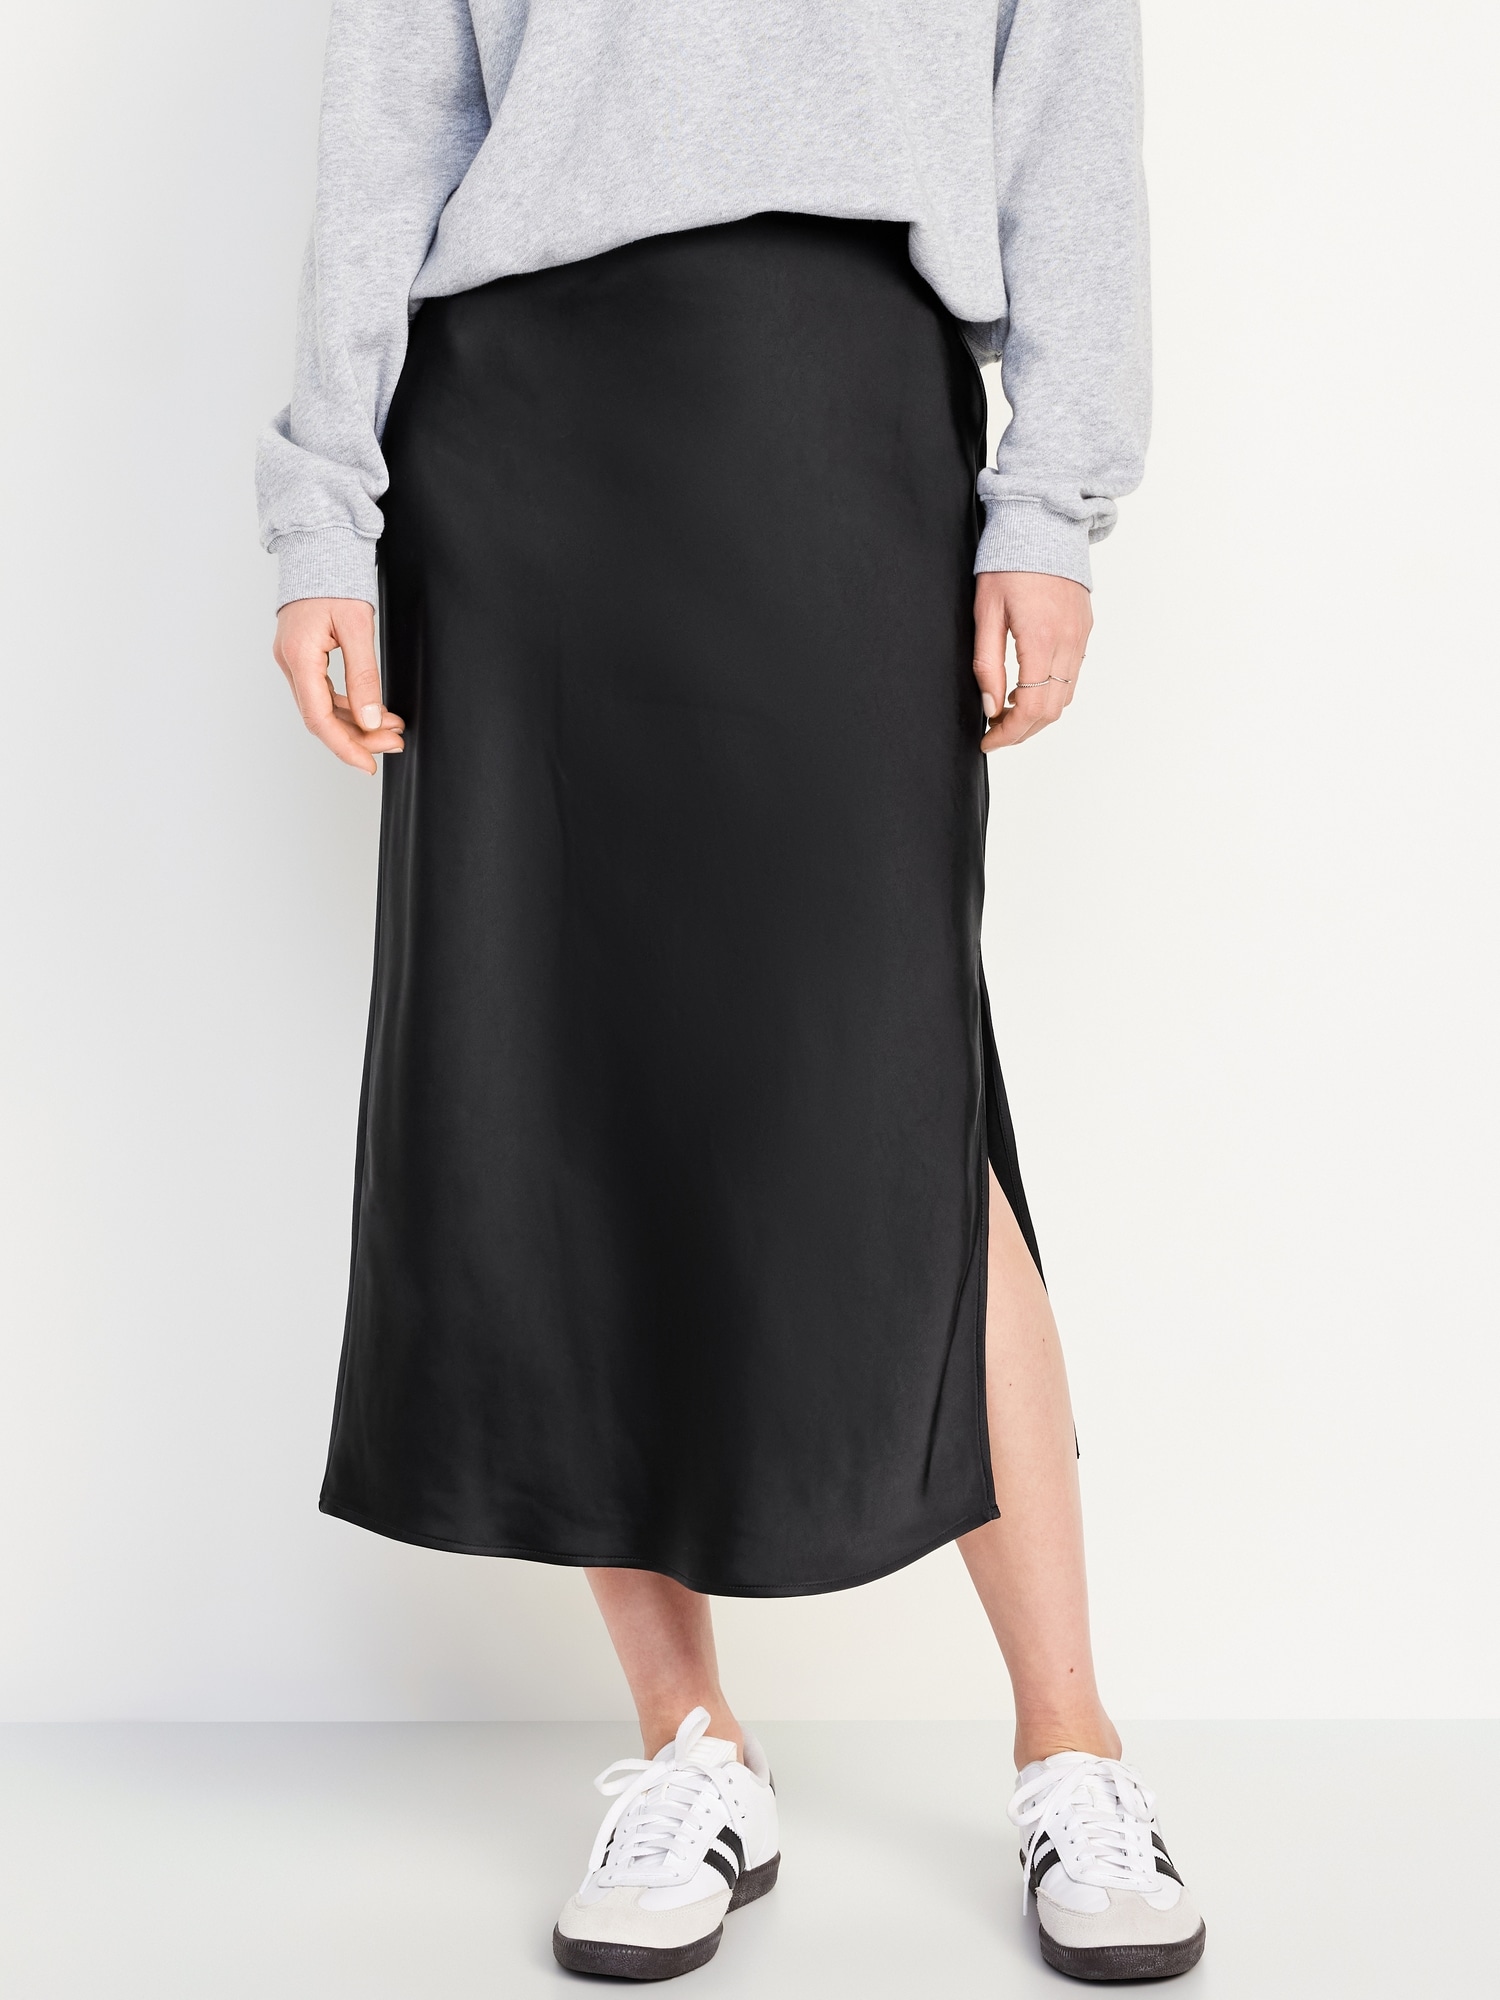 High-Waisted Satin Midi Slip Skirt Hot Deal